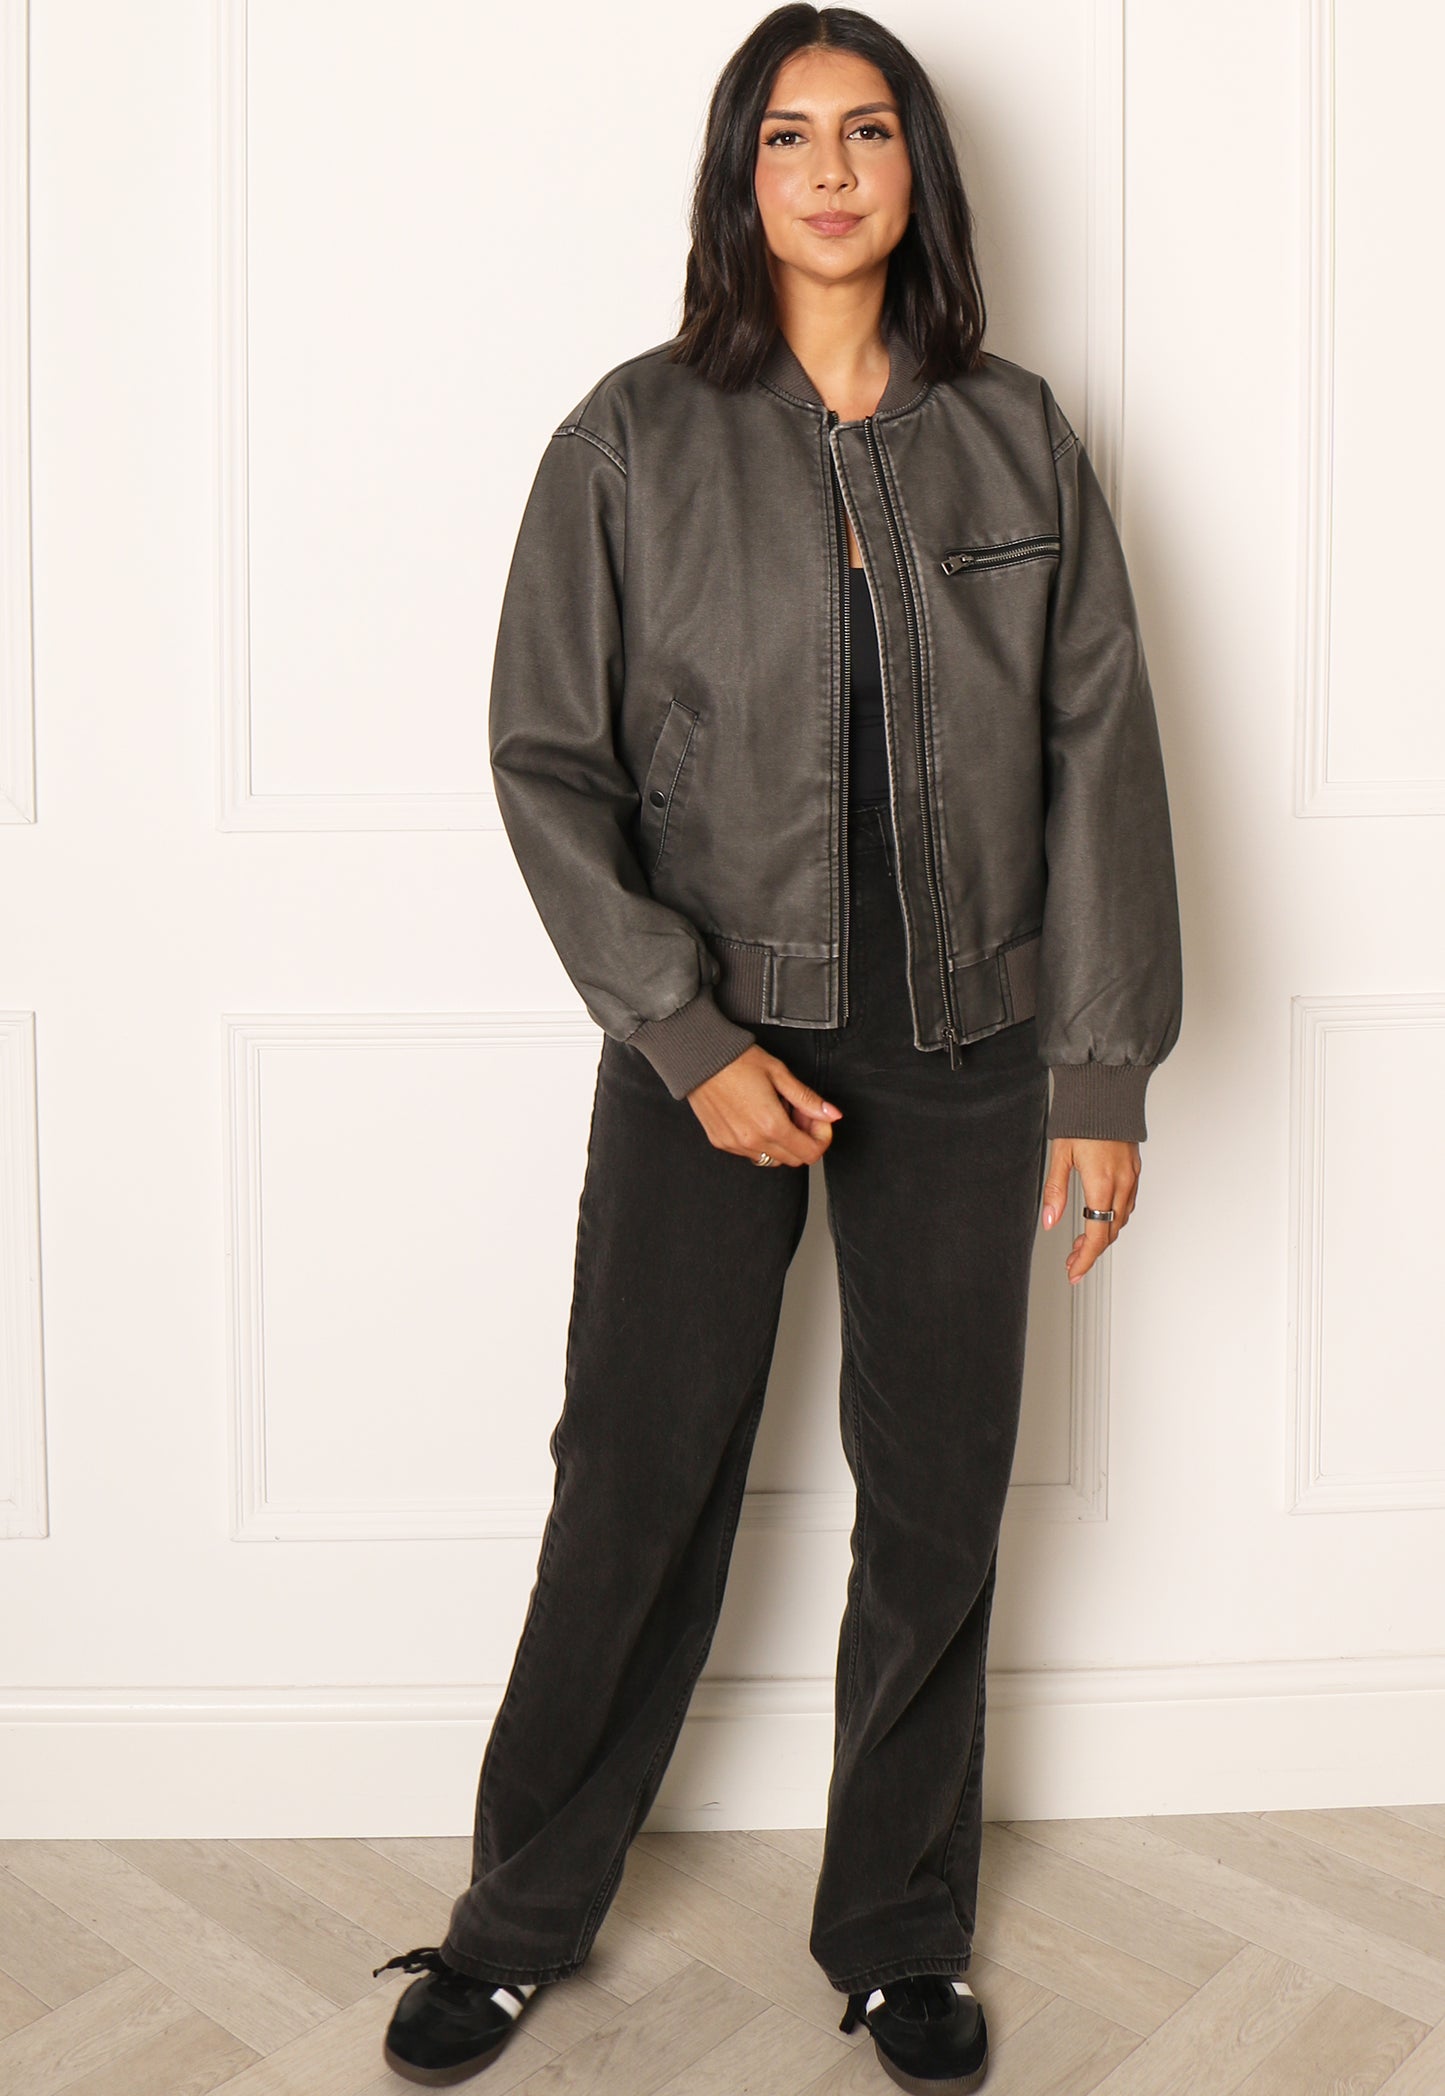 
                  
                    VERO MODA Ivy Vintage Look Bomberjakke i imiteret læder i Washed Black - One Nation-tøj
                  
                